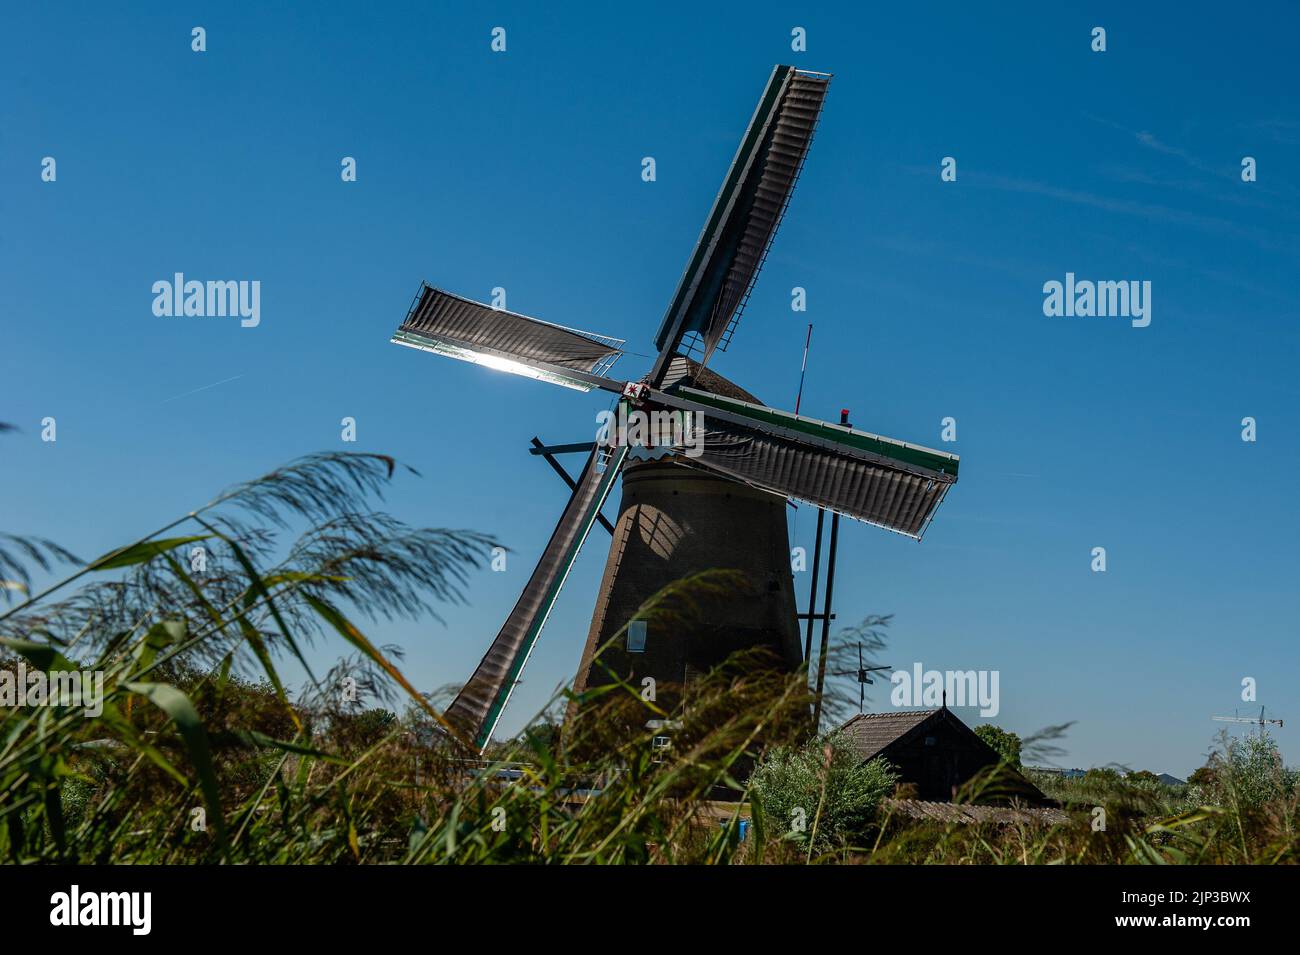 Kinderdijk, pays-Bas. 13th août 2022. Un moulin à vent est vu travailler avec le vent un jour très chaud. Dans la belle région riche en eau près de Dordrecht, vous trouverez les moulins à vent de Kinderdijk. Construits vers 1740, ces 19 magnifiques moulins à vent font partie d'un plus grand système de gestion de l'eau pour éviter les inondations. Aujourd'hui, ils symbolisent la gestion de l'eau aux pays-Bas et, en 1997, ils ont été déclarés site du patrimoine mondial de l'UNESCO. Chaque année, des milliers de touristes du monde entier visitent ce lieu emblématique. Crédit : SOPA Images Limited/Alamy Live News Banque D'Images